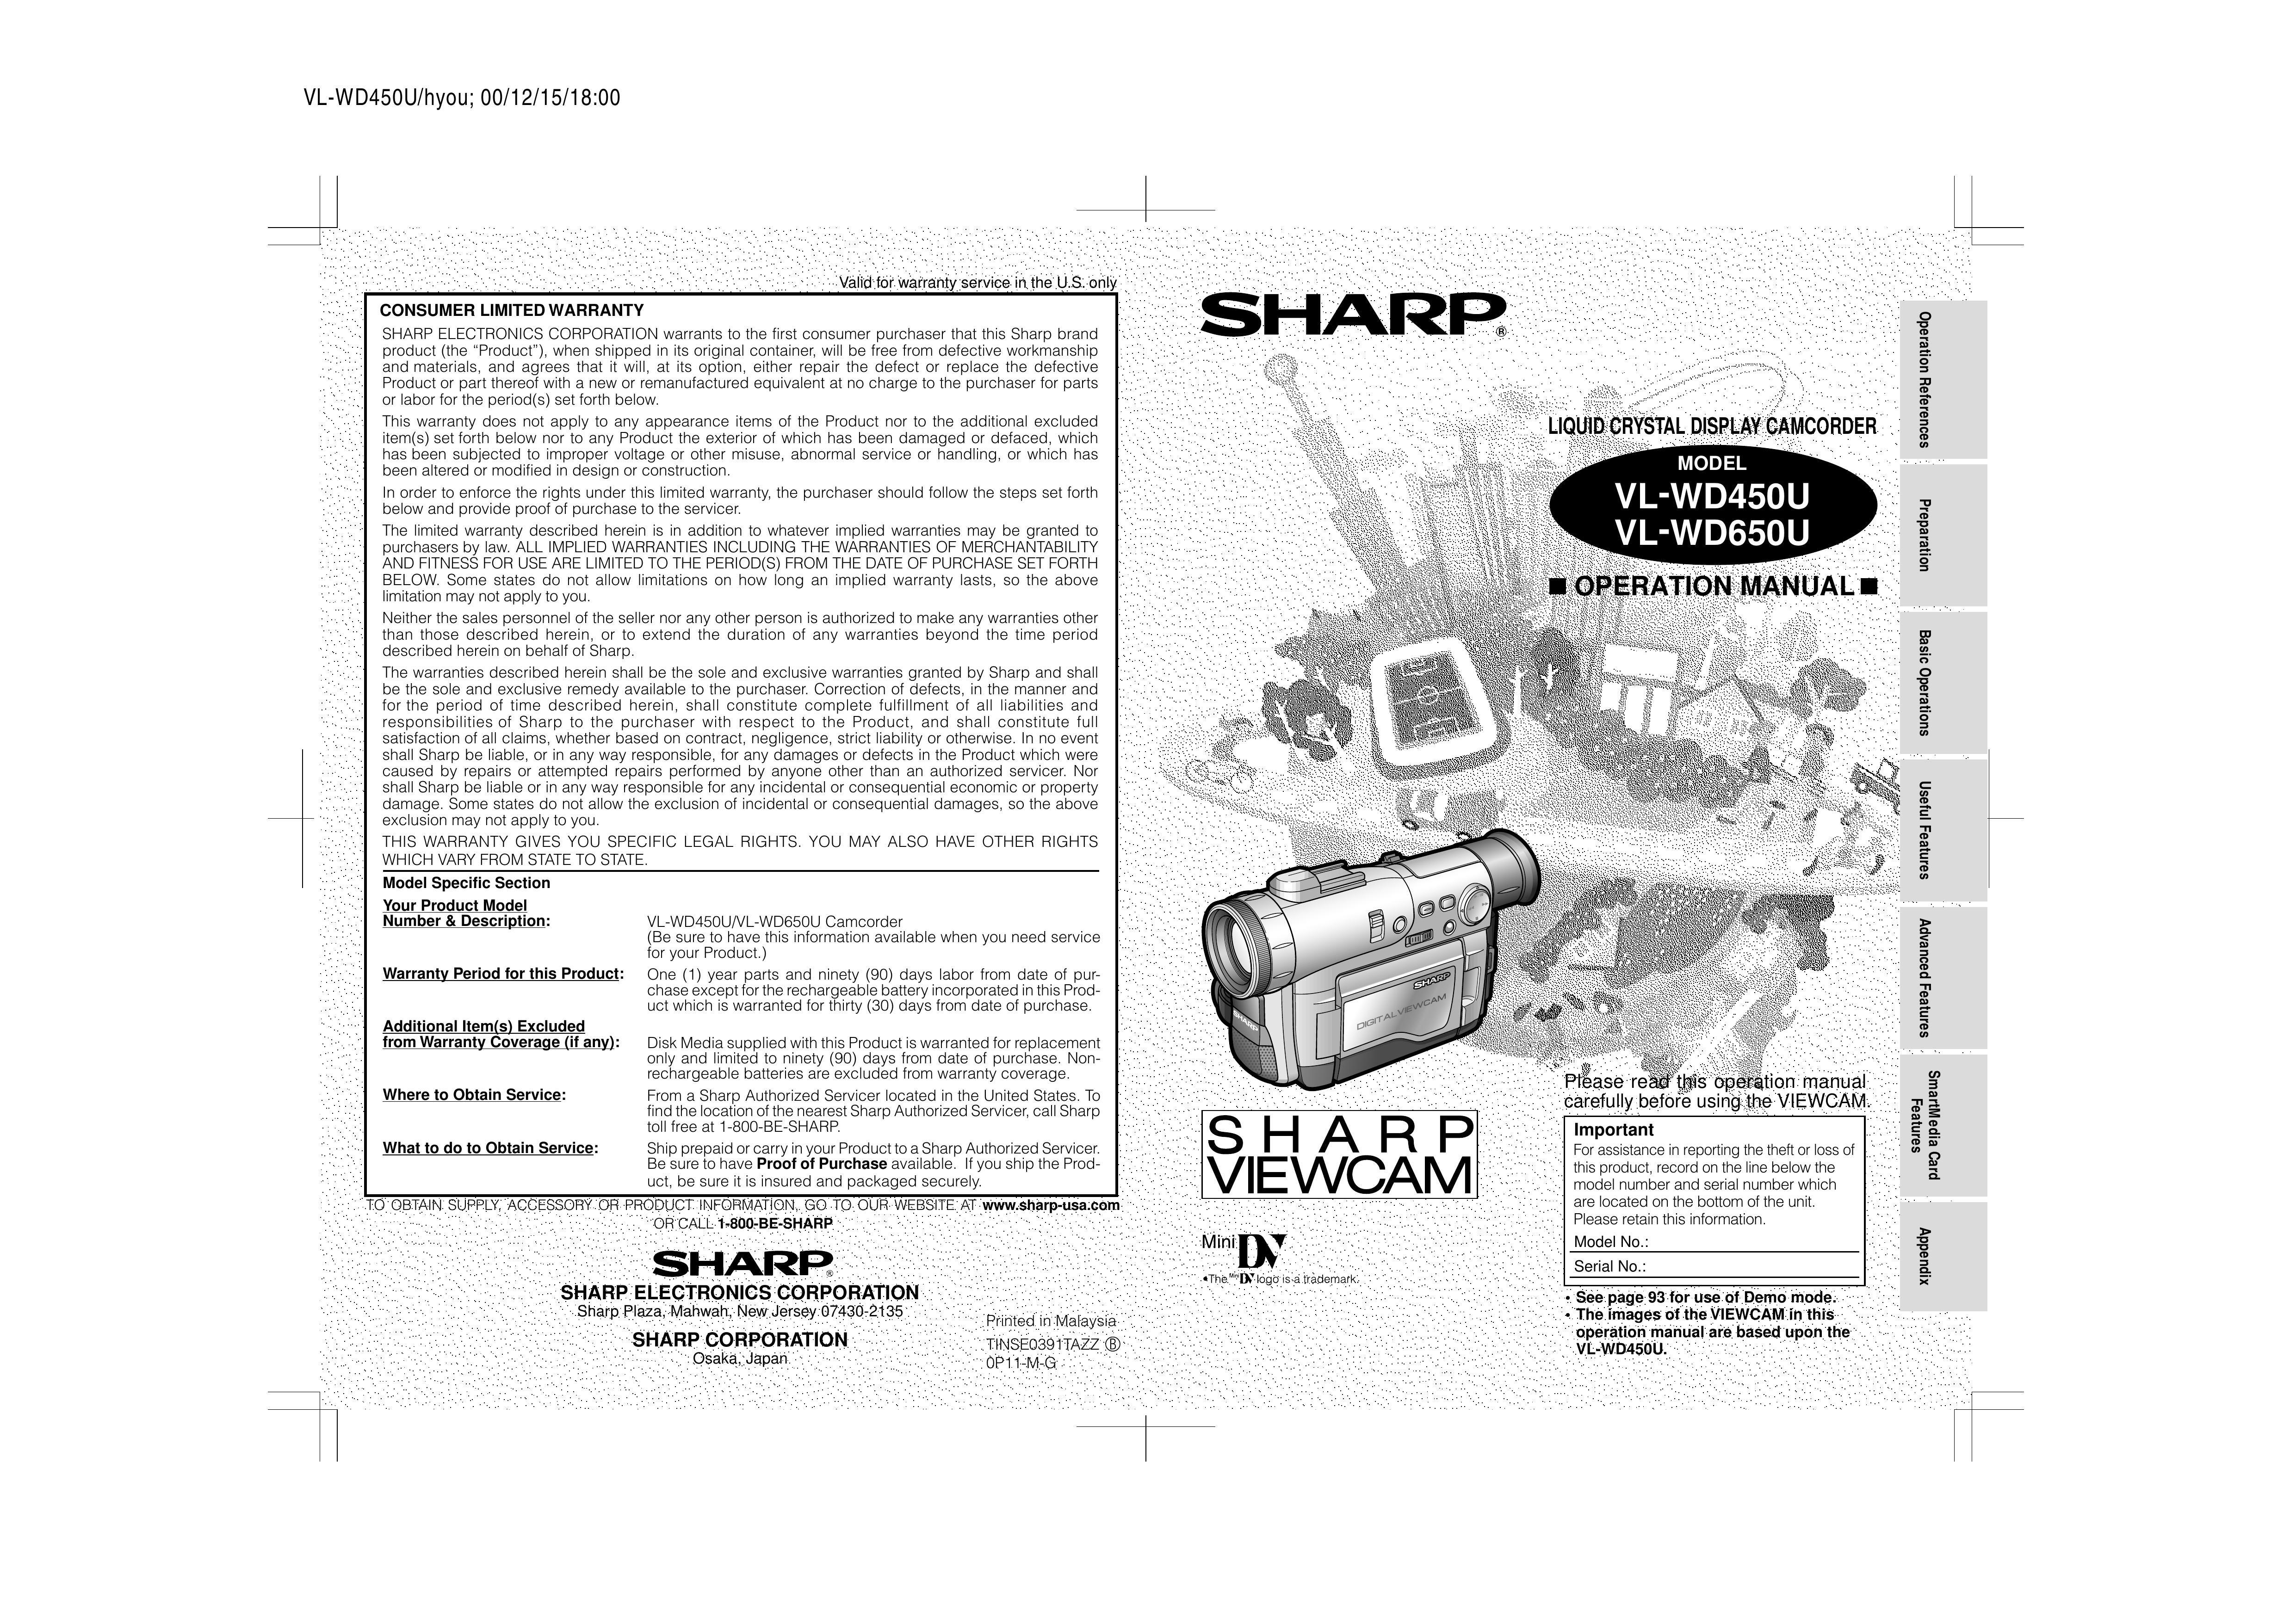 Sharp VL-WD450U Camcorder User Manual